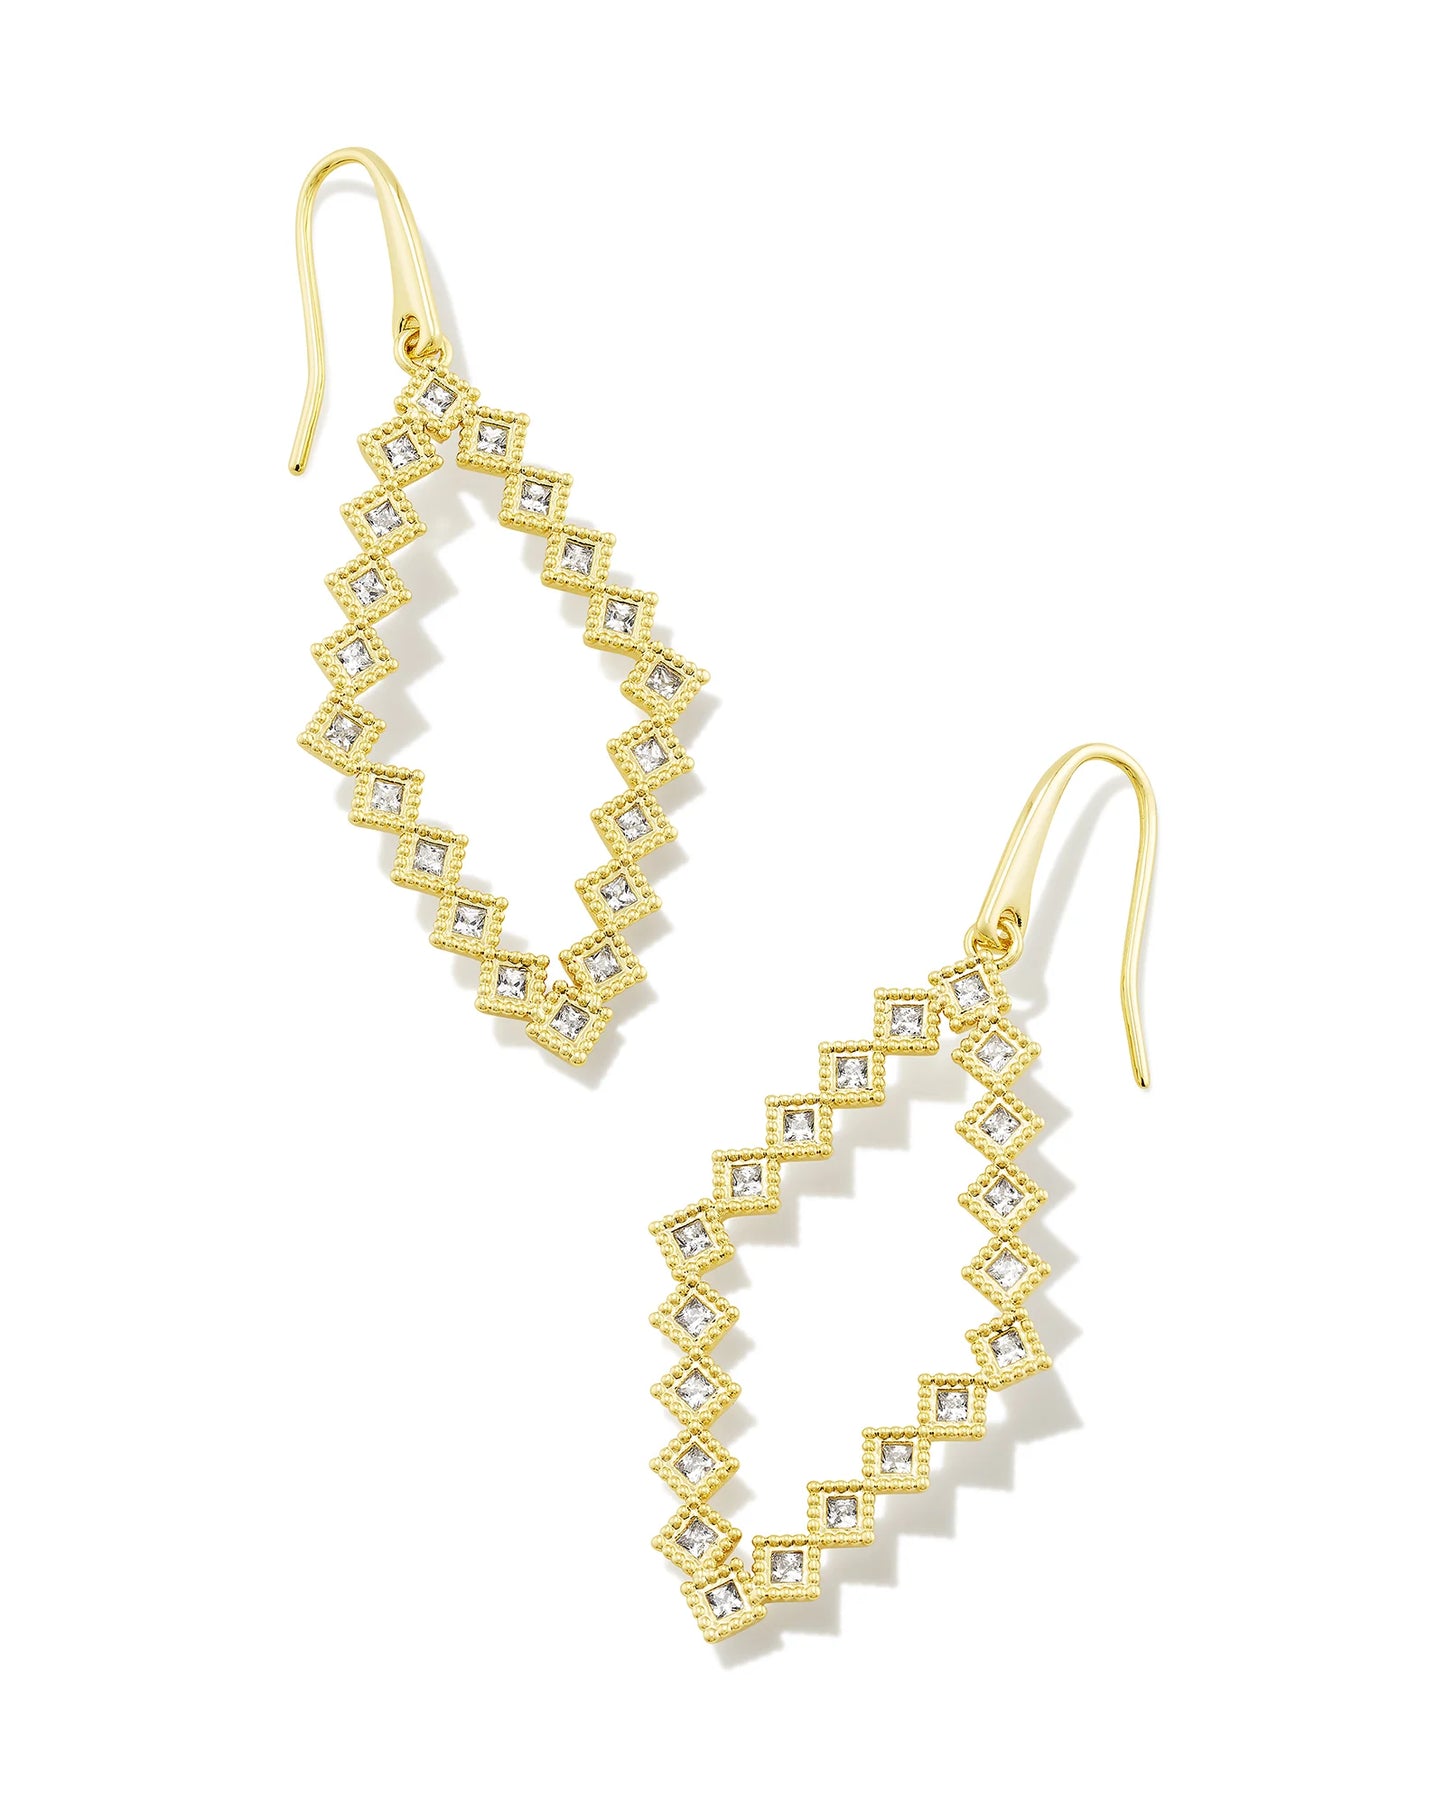 Kendra Scott Kinsley Open Frame Earrings Gold White CZ-Earrings-Kendra Scott-E00252GLD-The Twisted Chandelier